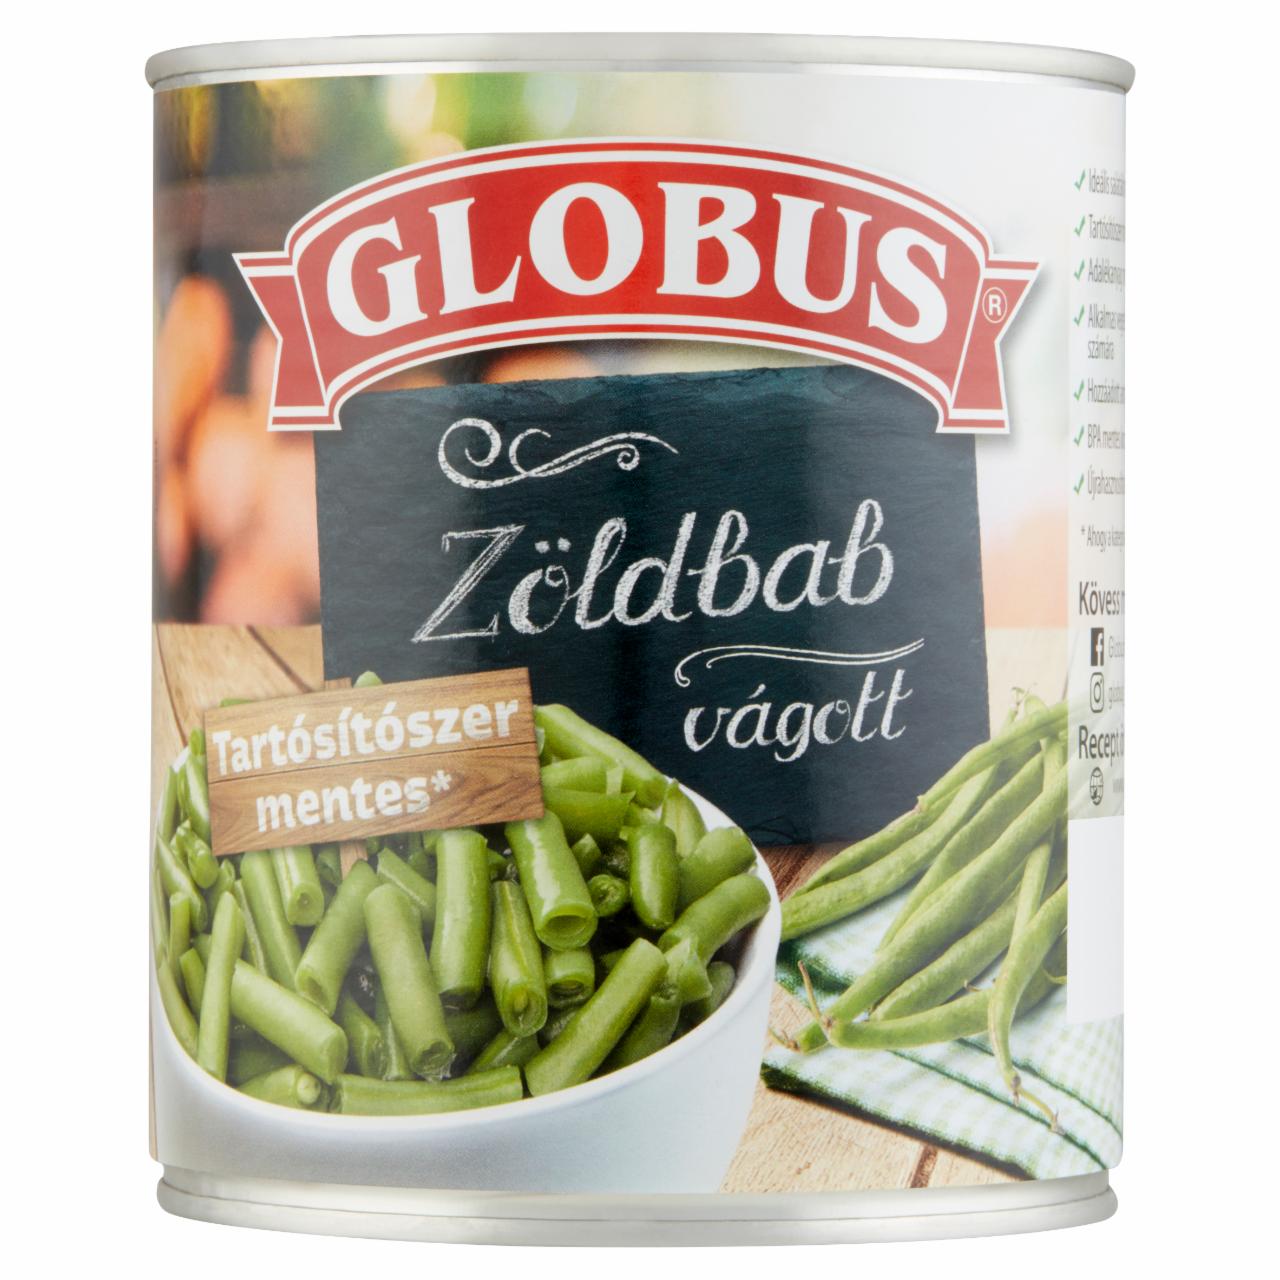 Képek - Globus vágott zöldbab 800 g